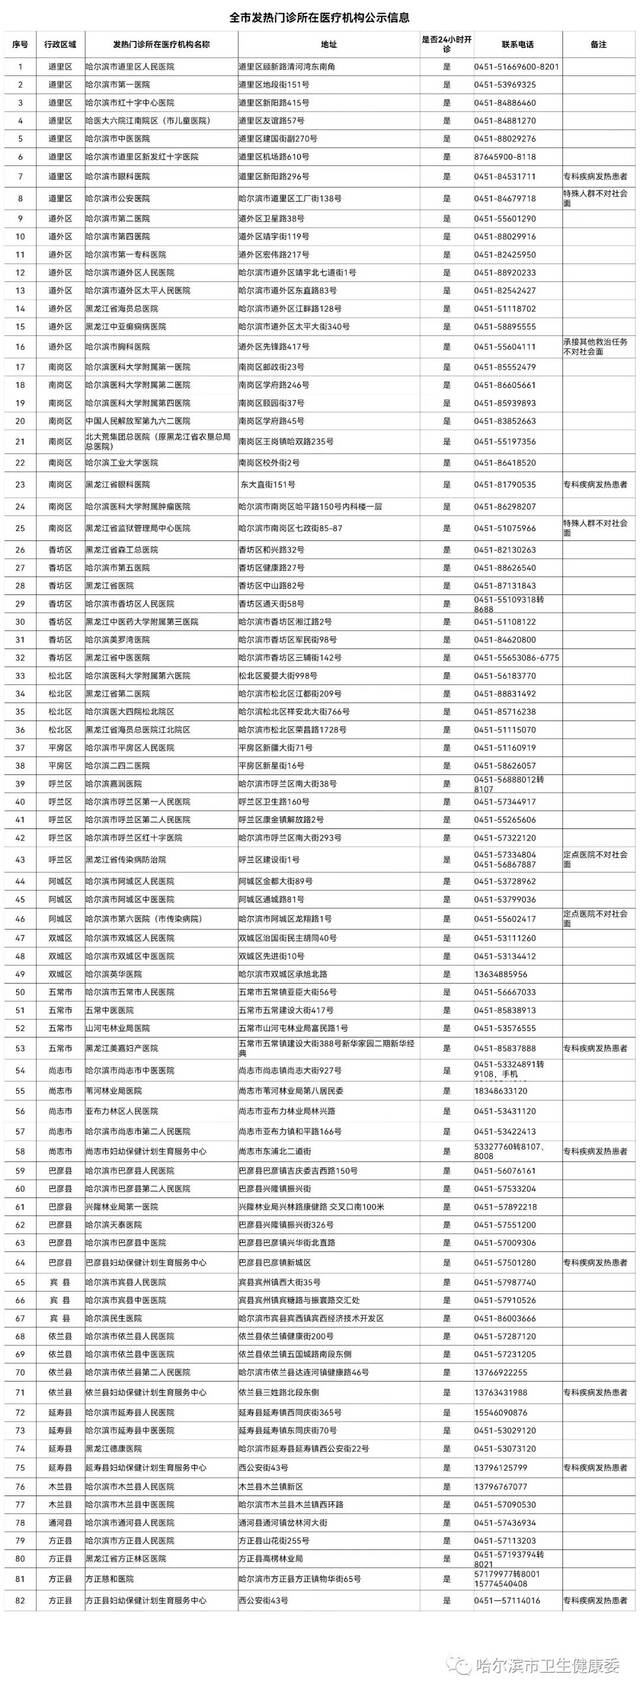 哈尔滨市公布82家设有发热门诊医疗机构地址